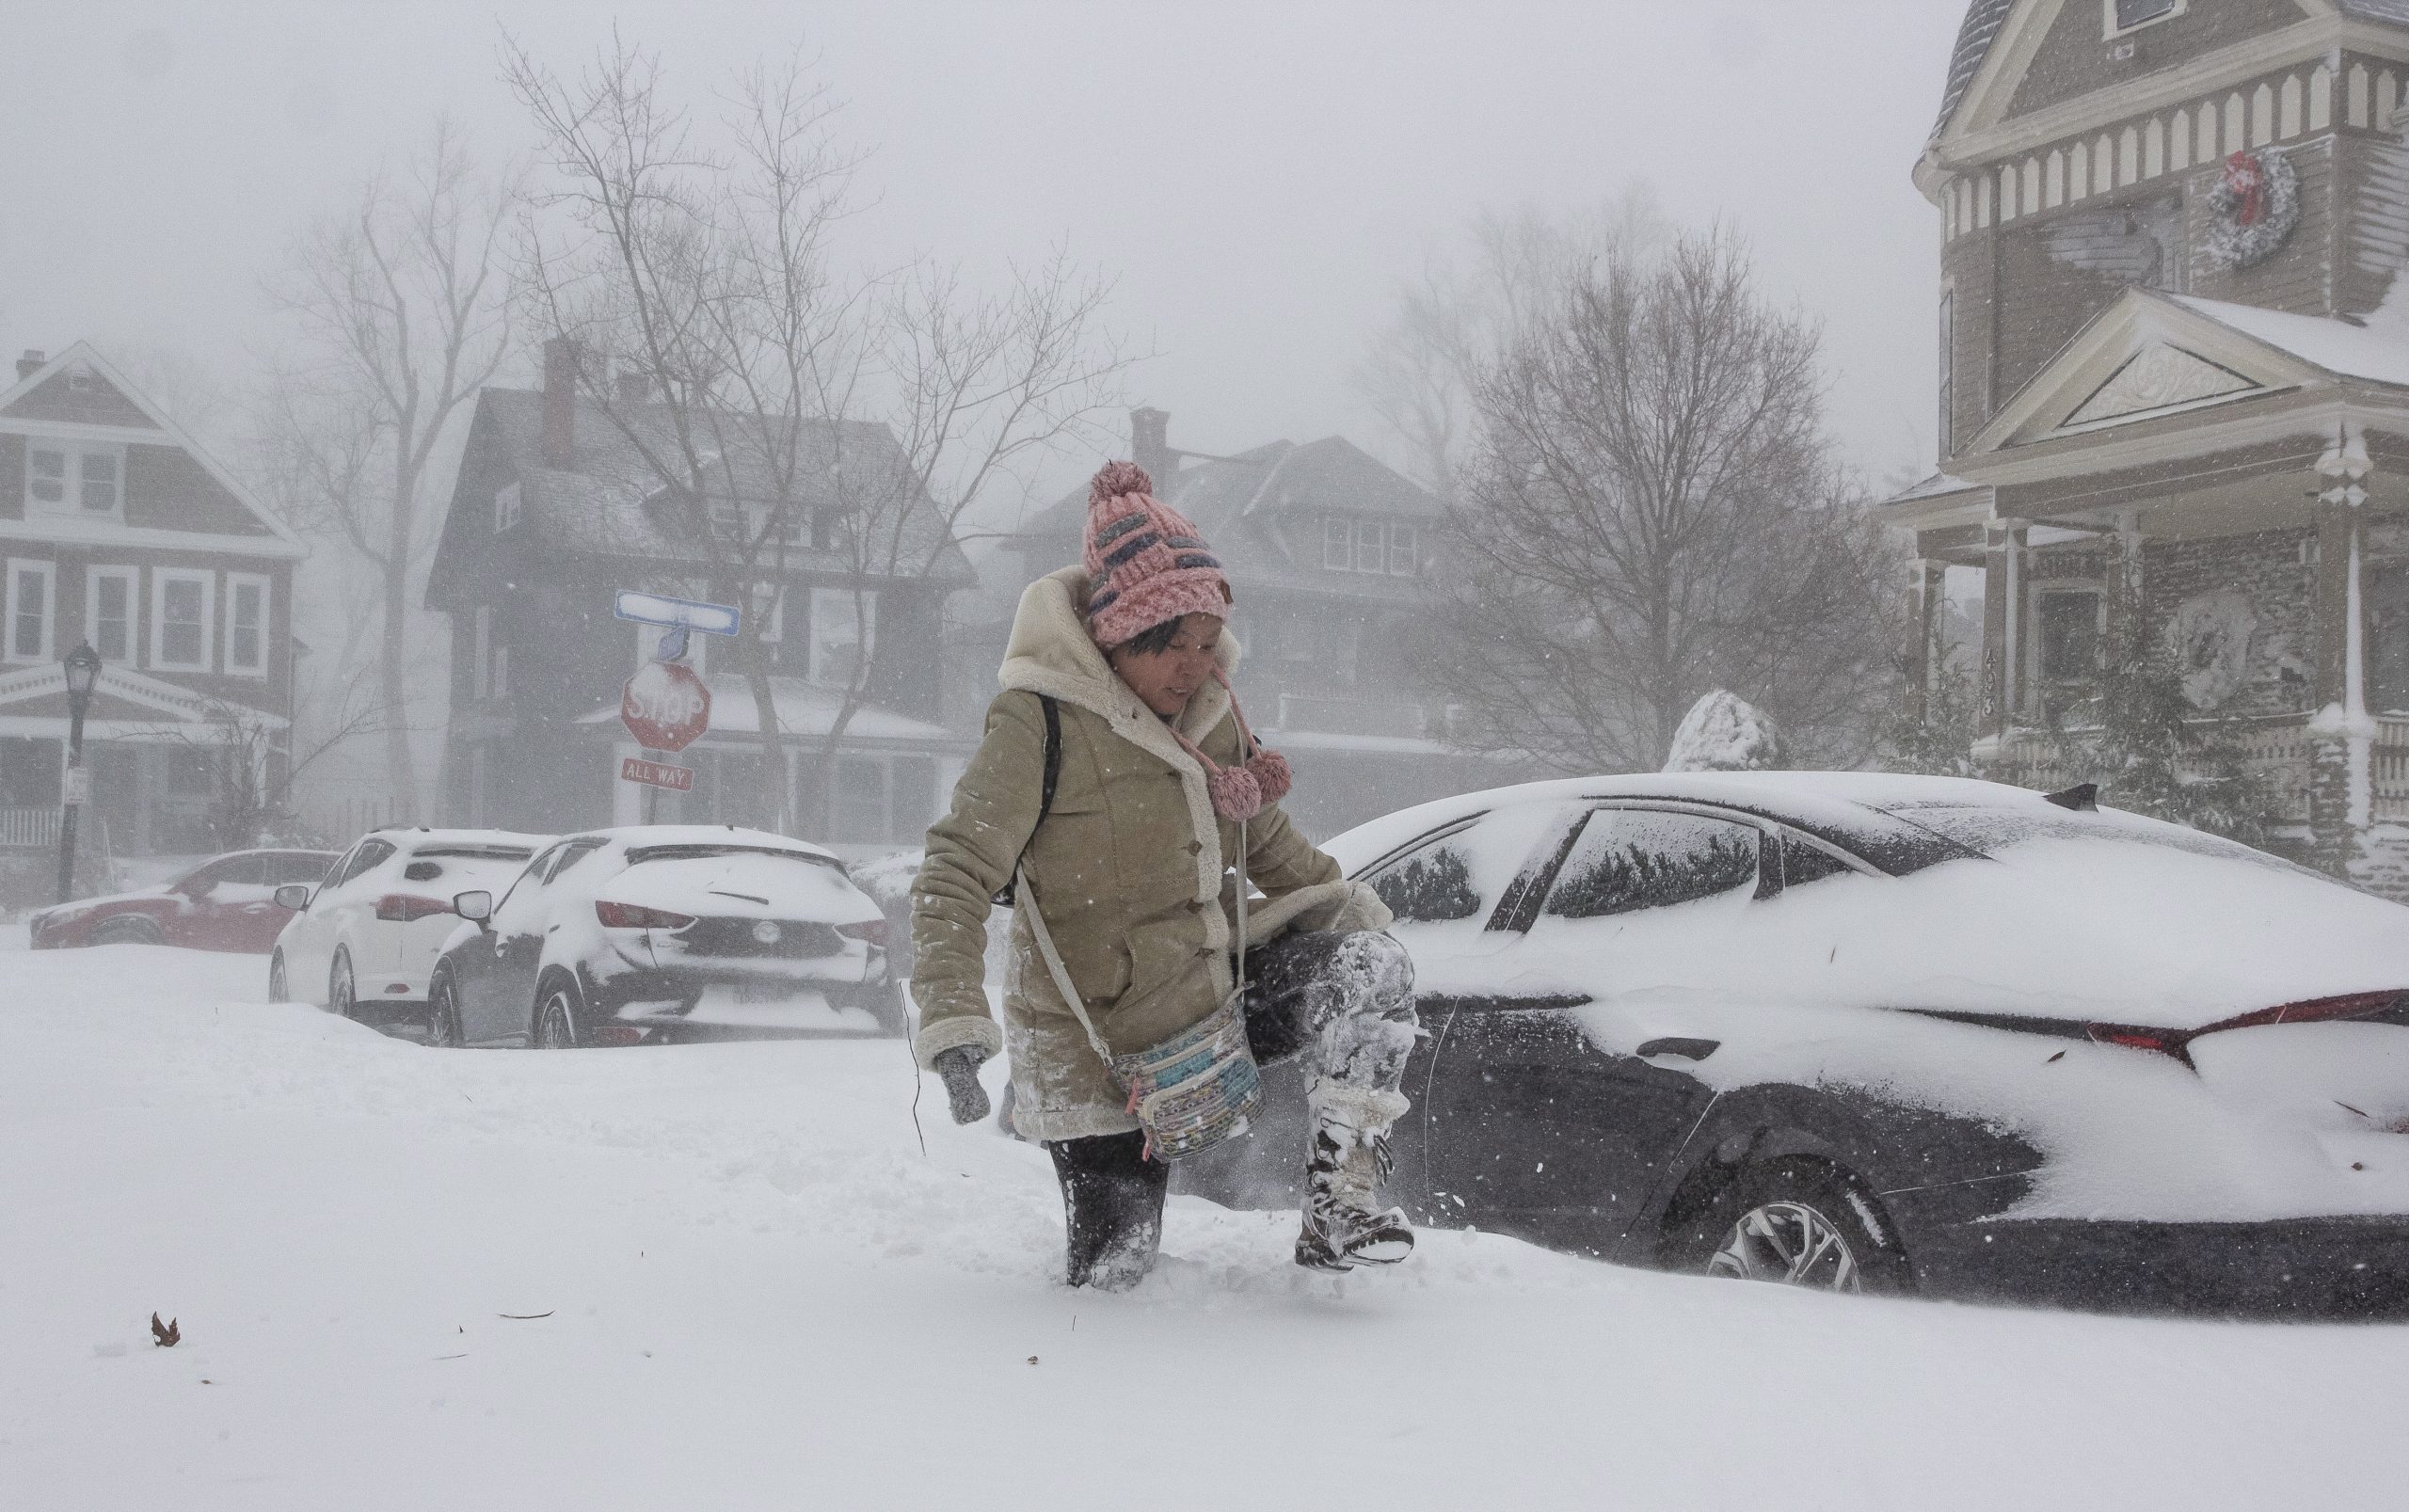 史诗级雪暴席卷美国增至34死 多地大停电旅行计划受阻